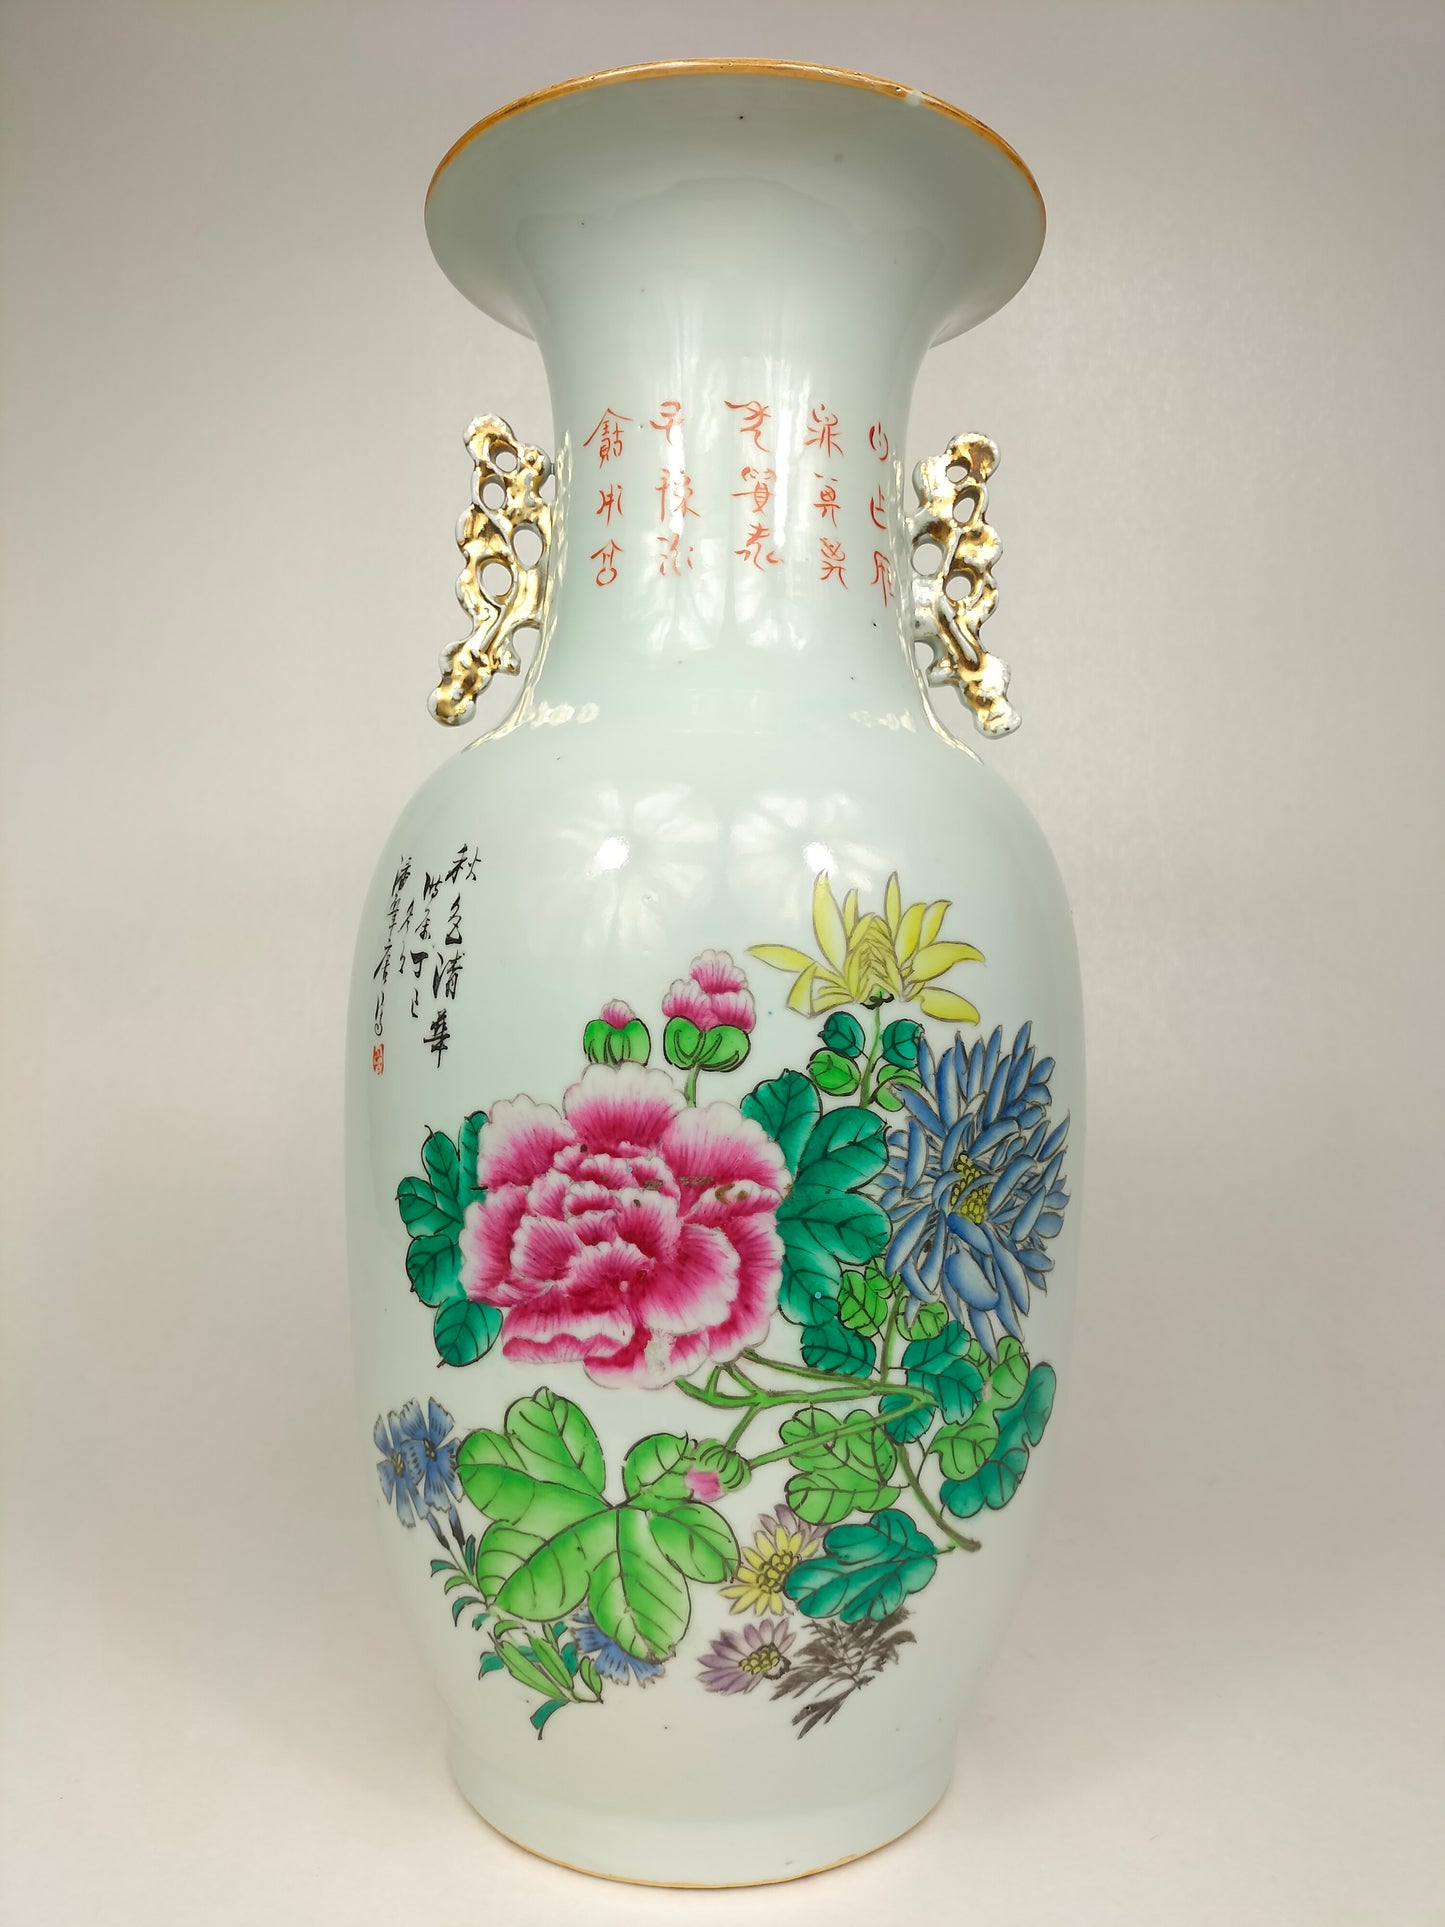 Chiếc bình cổ Trung Quốc được trang trí bằng cây xô thơm và hoa // Nghệ sĩ ký tên - Thời kỳ Cộng hòa (1912-1949)